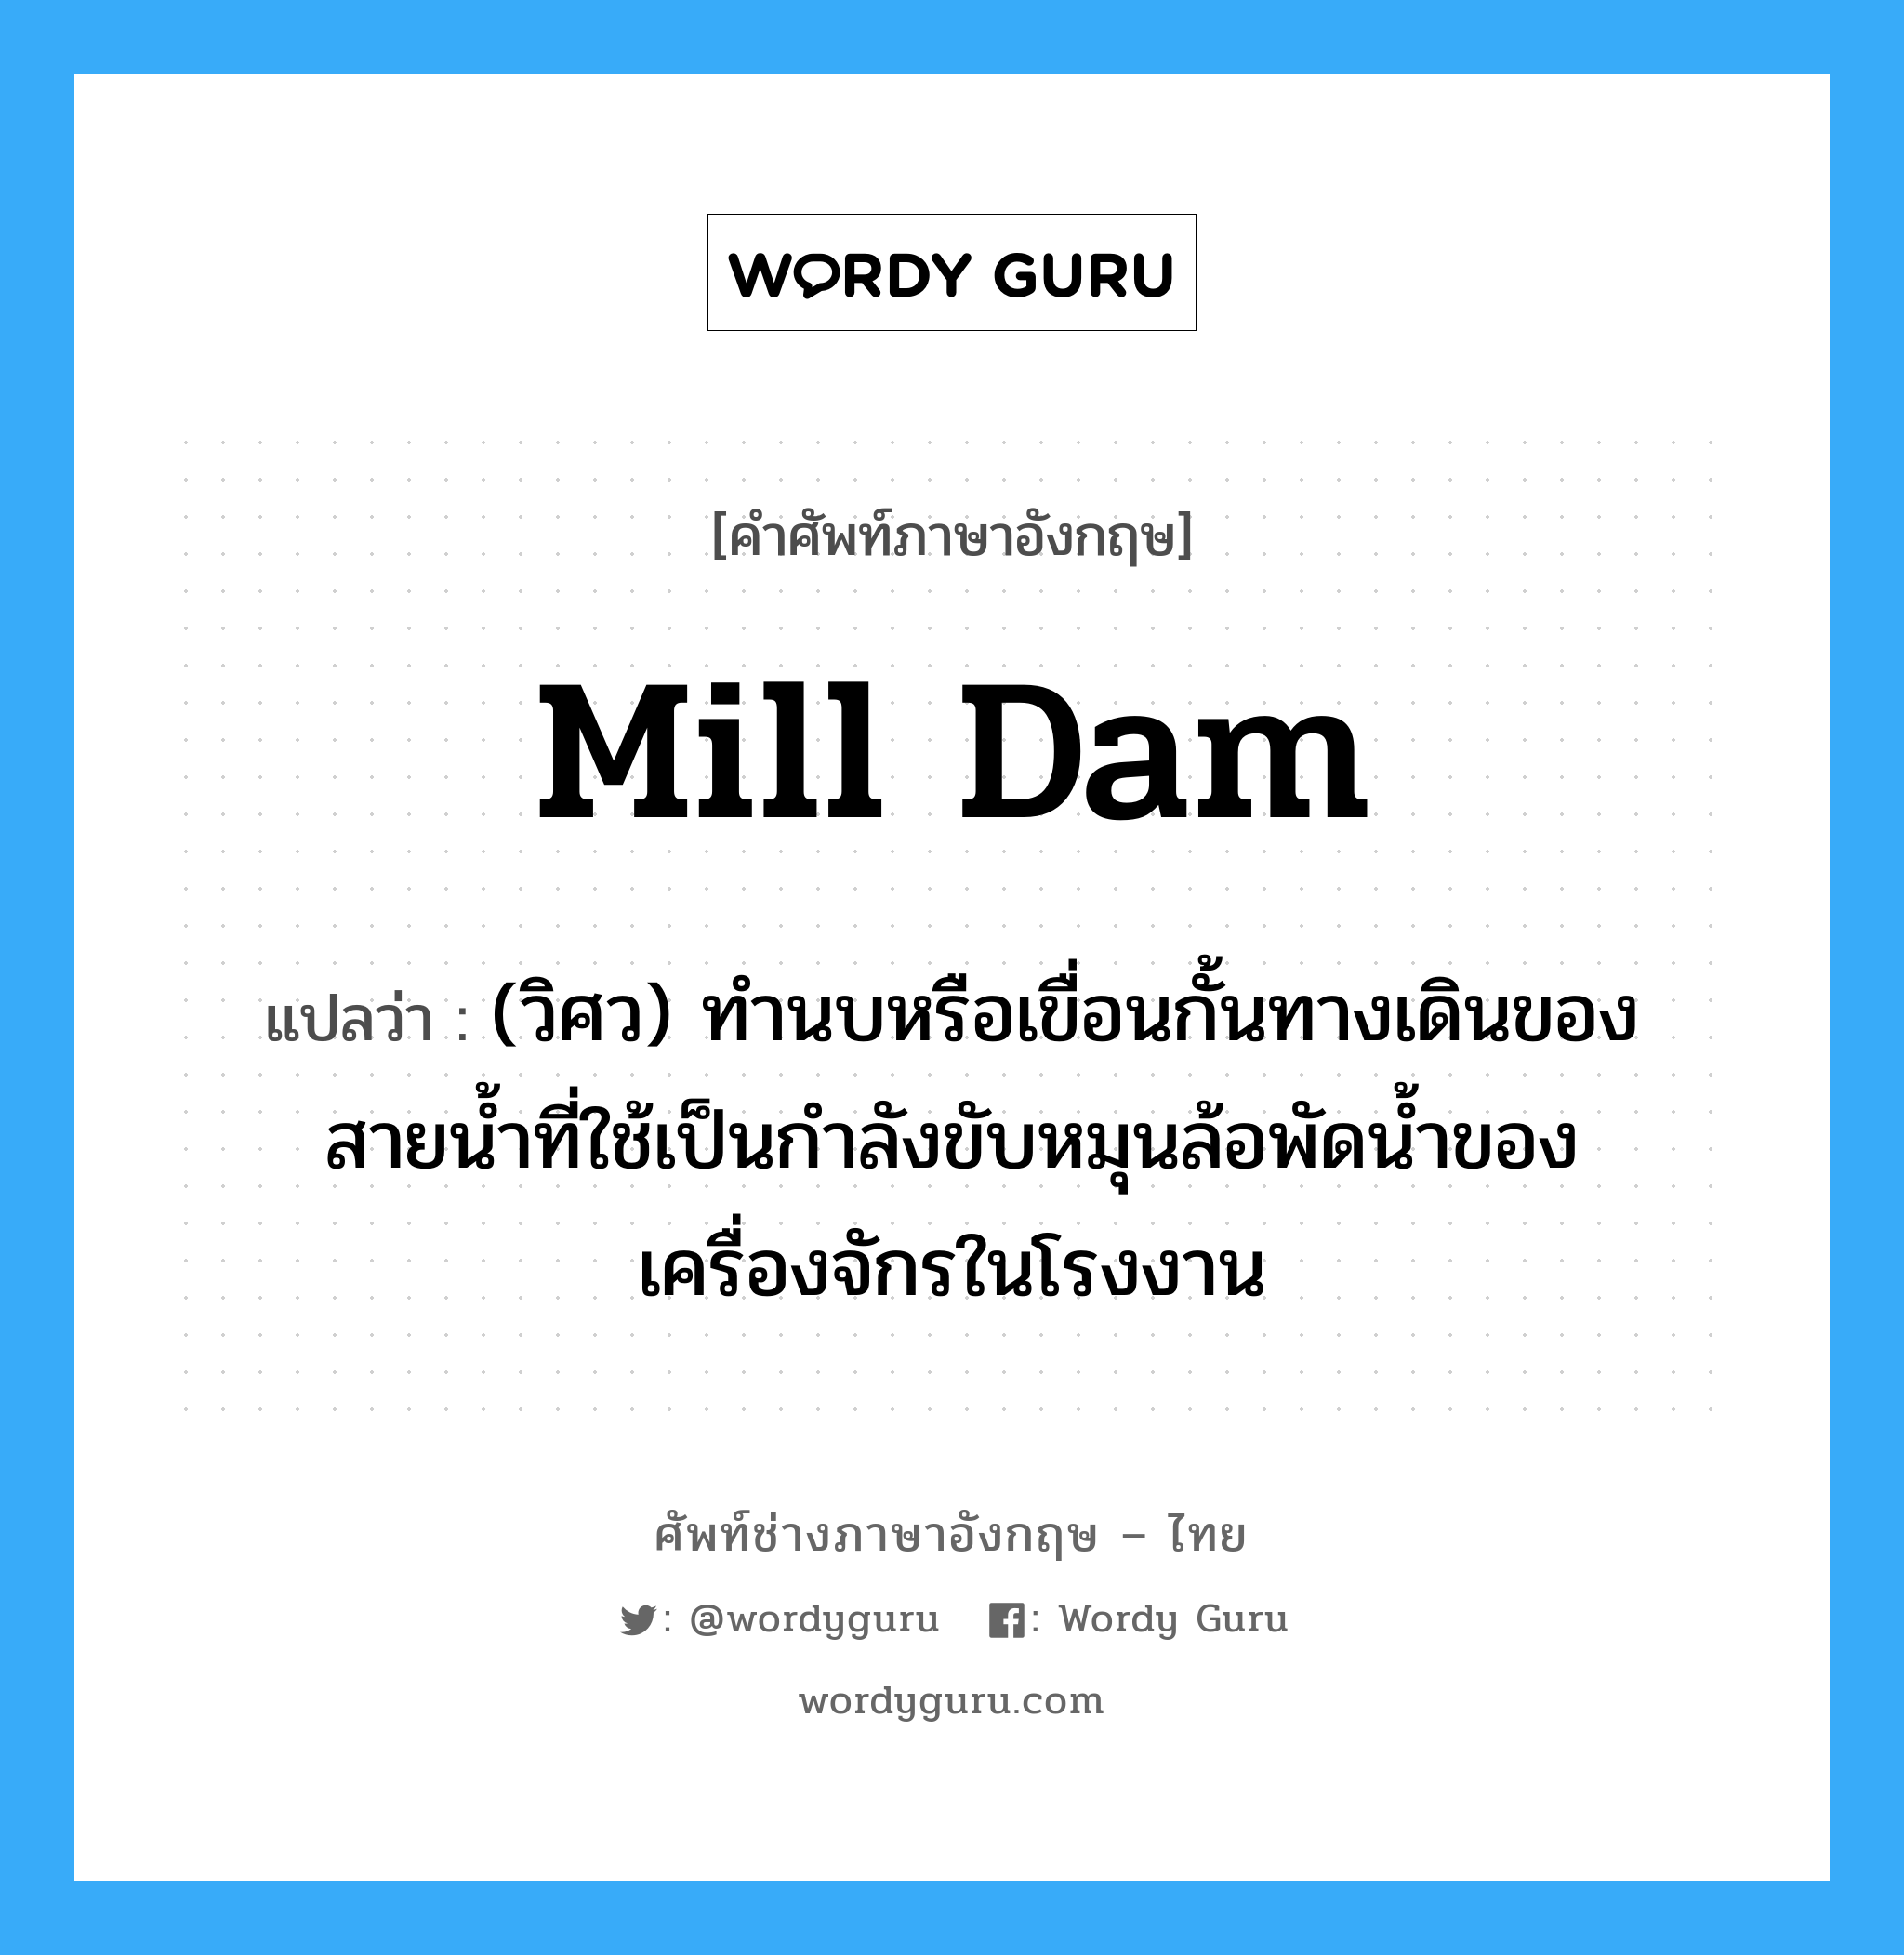 mill dam แปลว่า?, คำศัพท์ช่างภาษาอังกฤษ - ไทย mill dam คำศัพท์ภาษาอังกฤษ mill dam แปลว่า (วิศว) ทำนบหรือเขื่อนกั้นทางเดินของสายน้ำที่ใช้เป็นกำลังขับหมุนล้อพัดน้ำของเครื่องจักรในโรงงาน